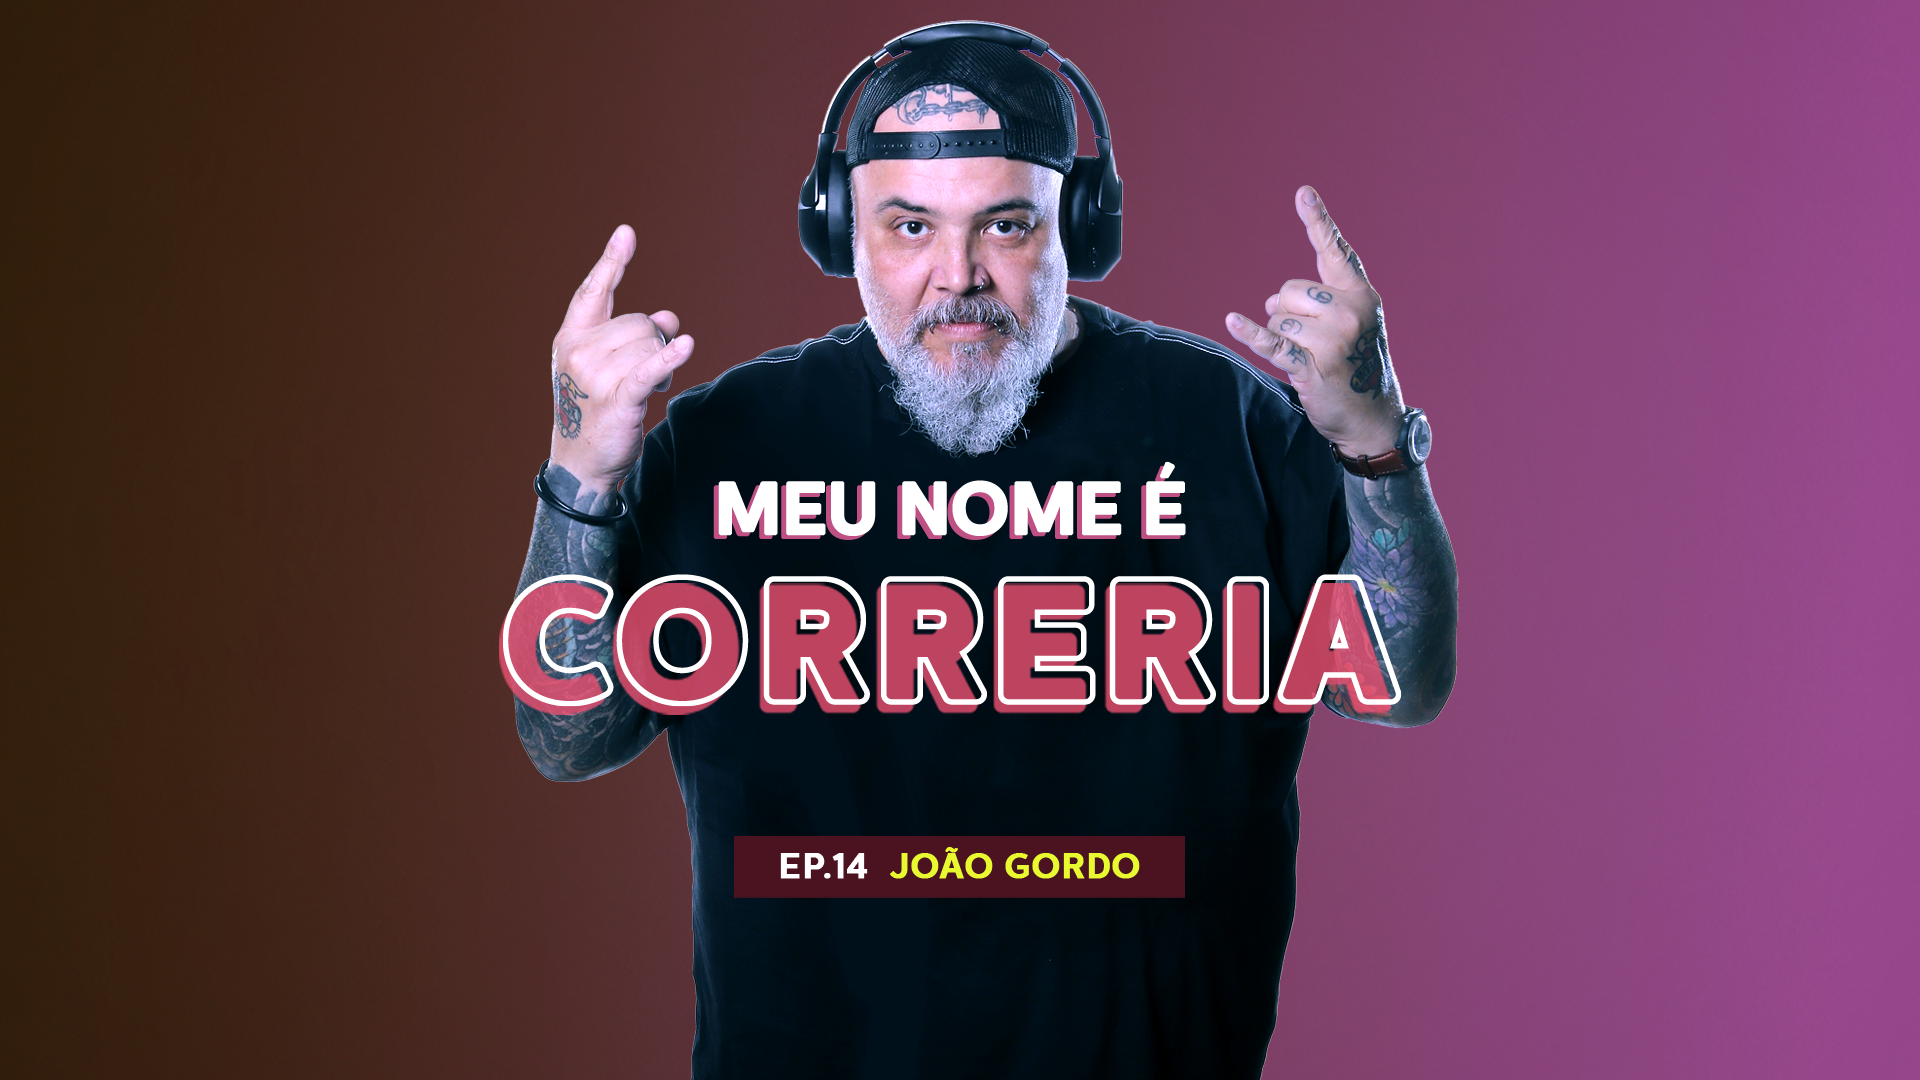 João Gordo